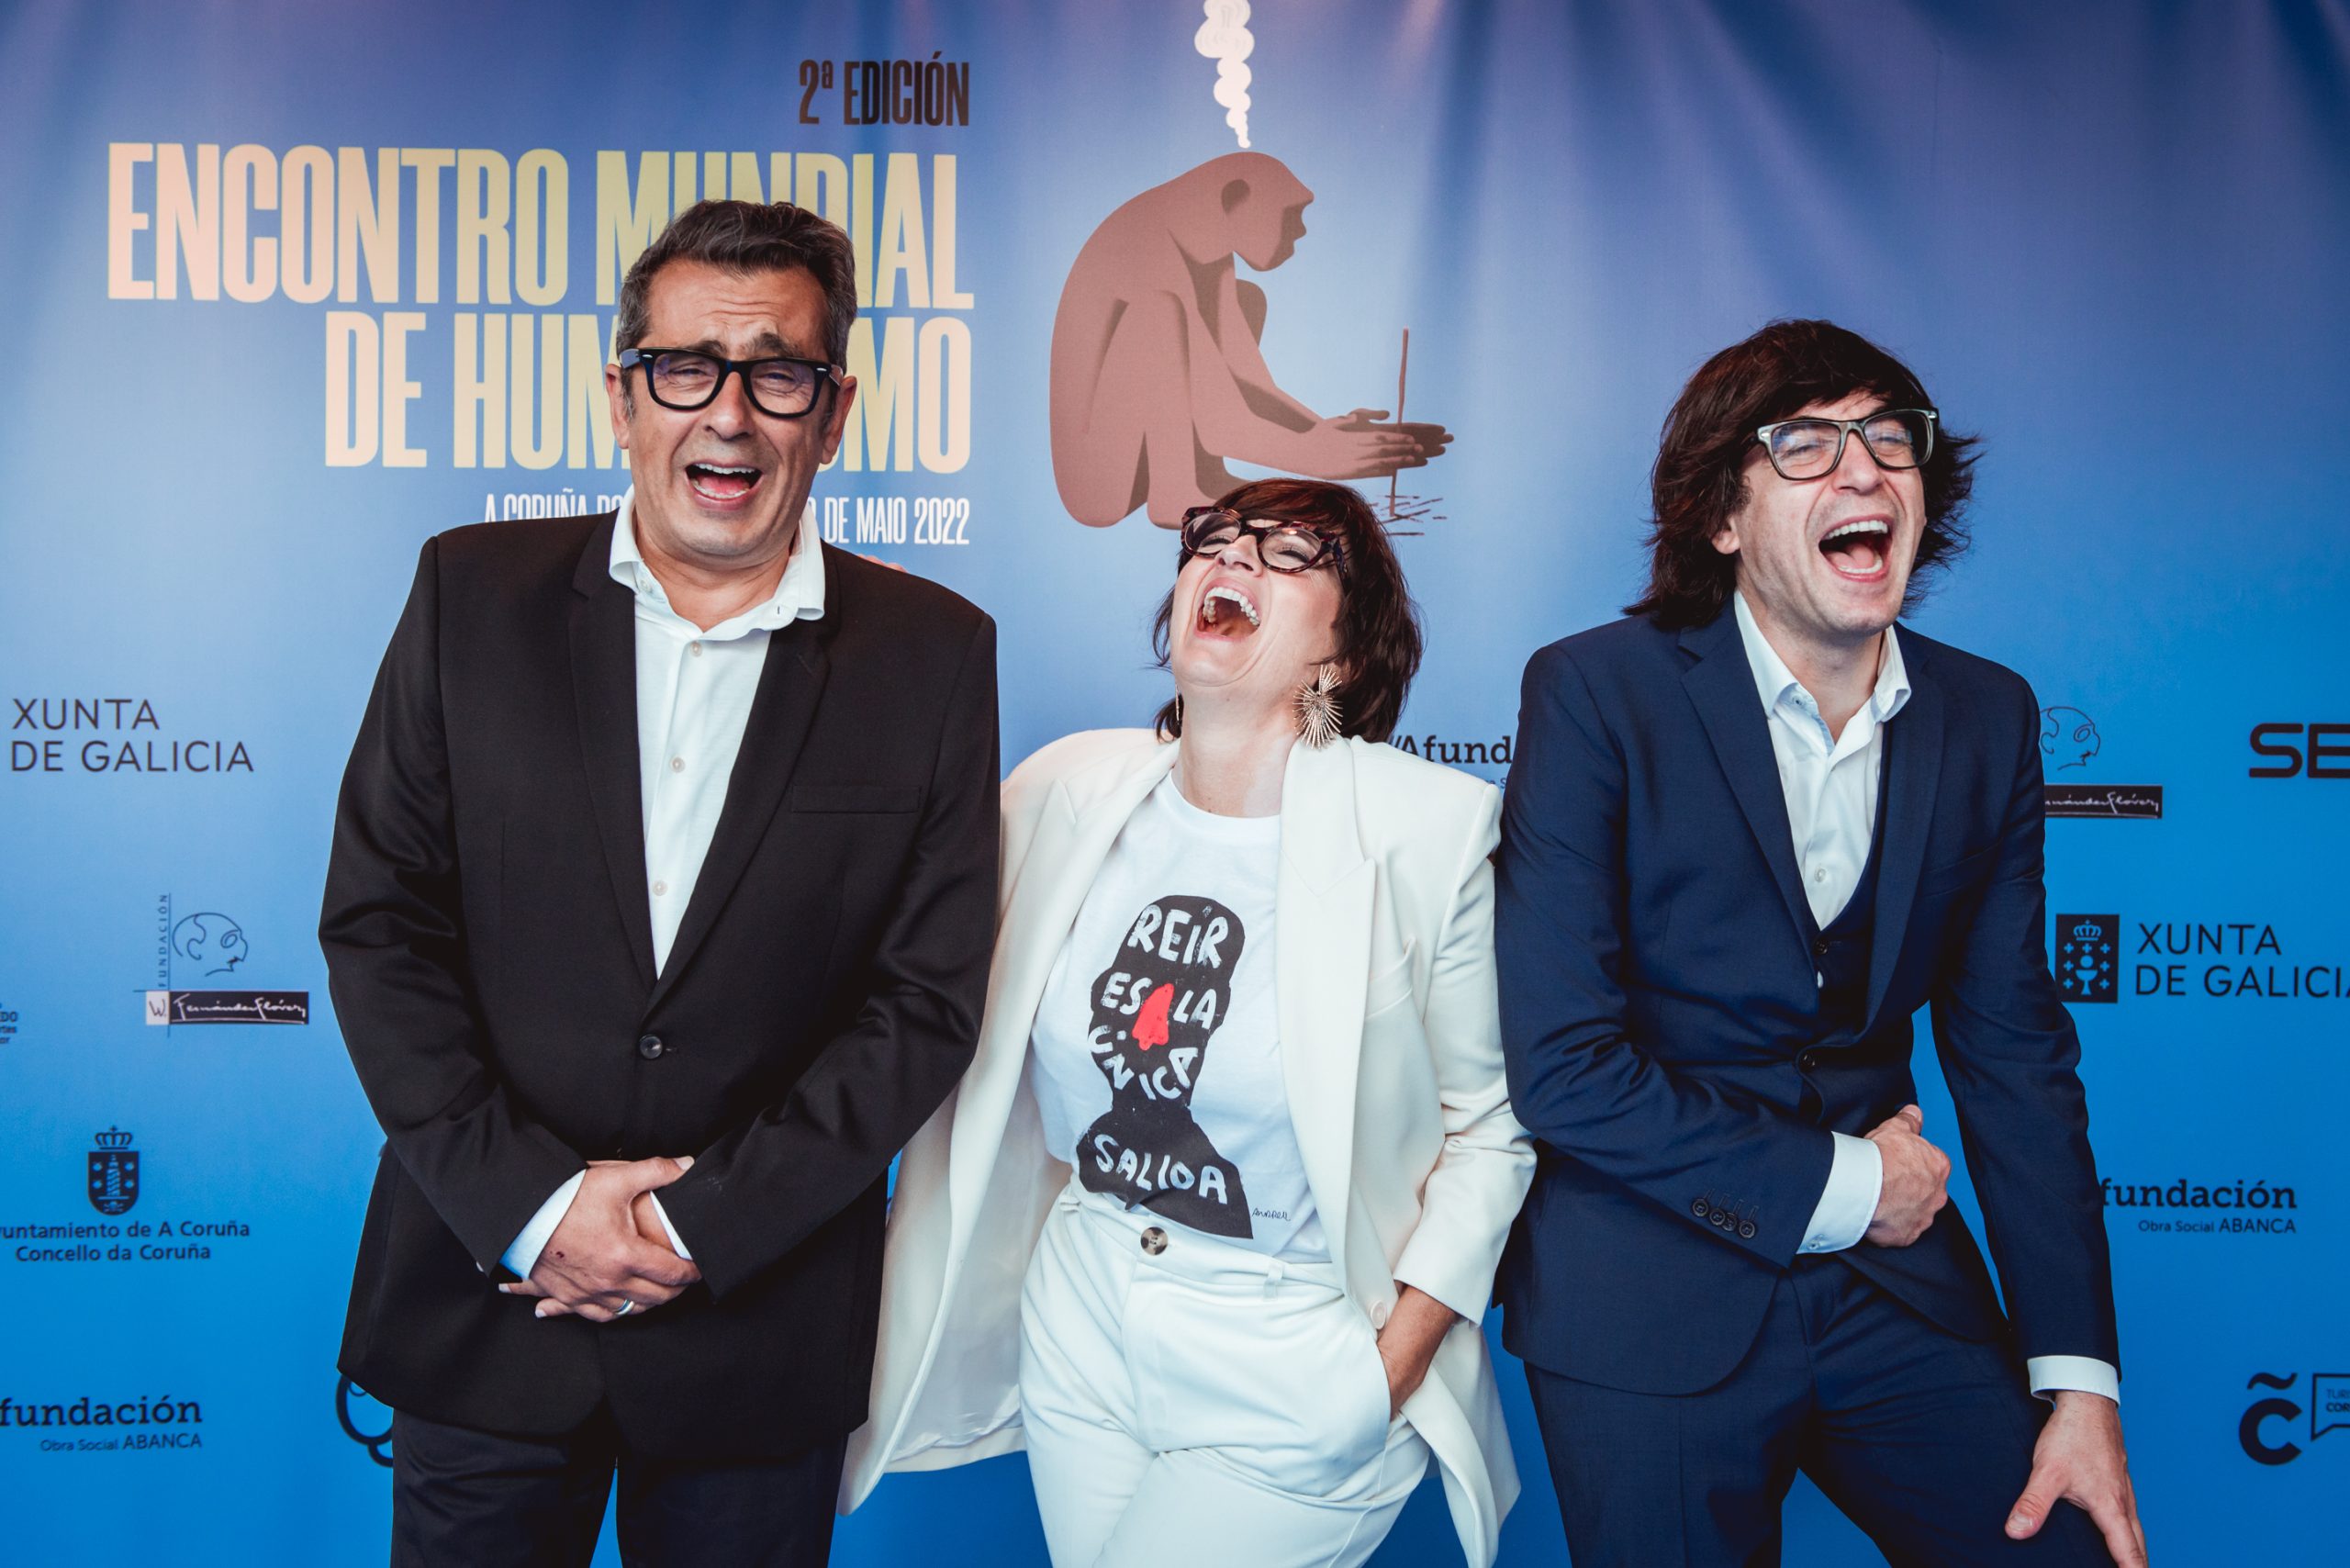 La tercera edición del Encuentro Mundial de Humorismo  se celebrará en A Coruña del 28 de abril al 7 de mayo